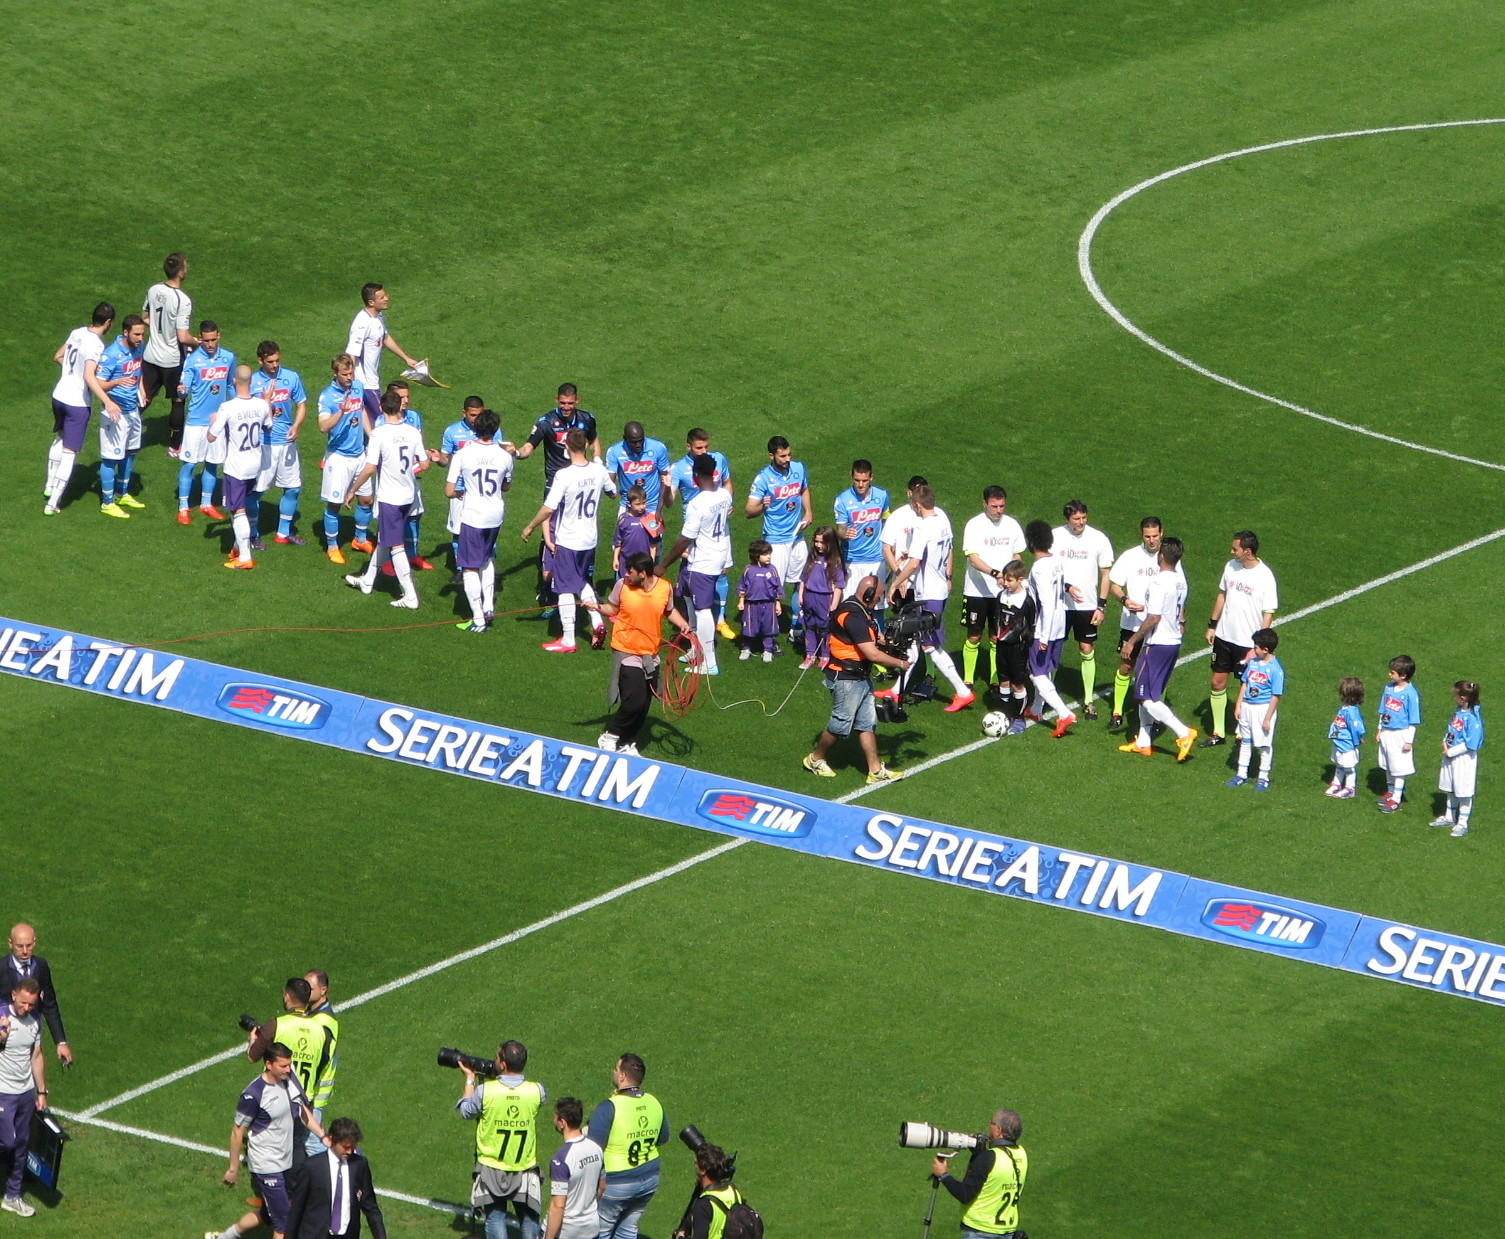 La domenica perfetta: il Napoli ritrova il sorriso, la vittoria e i suoi goleador